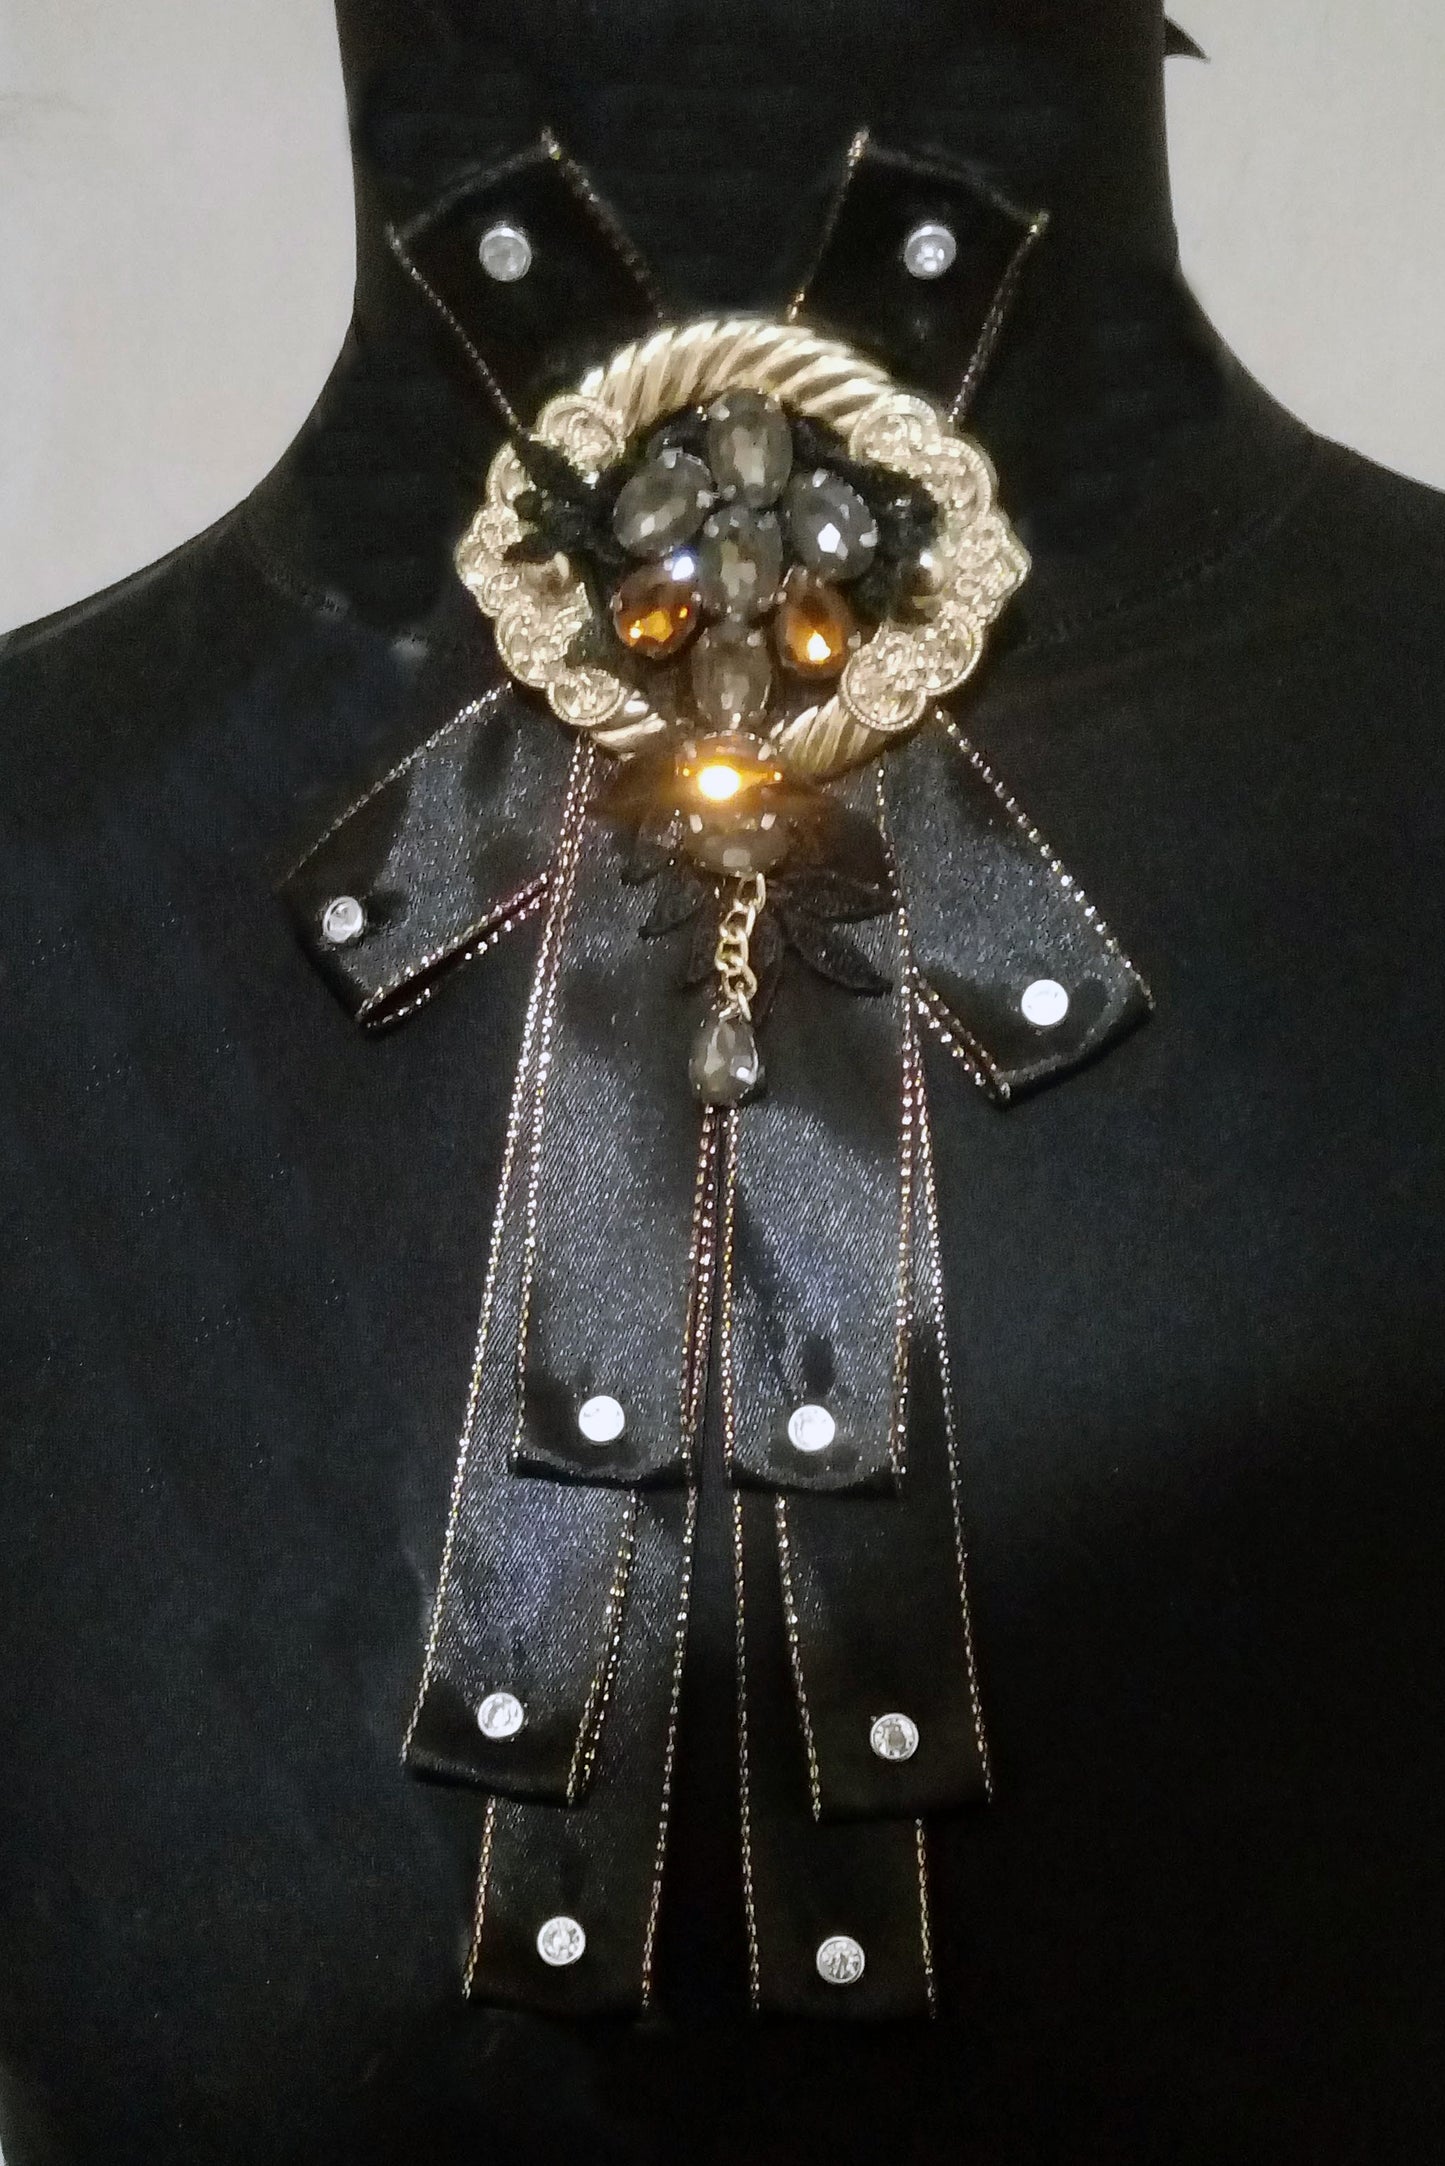 Gothick neck tie custom made